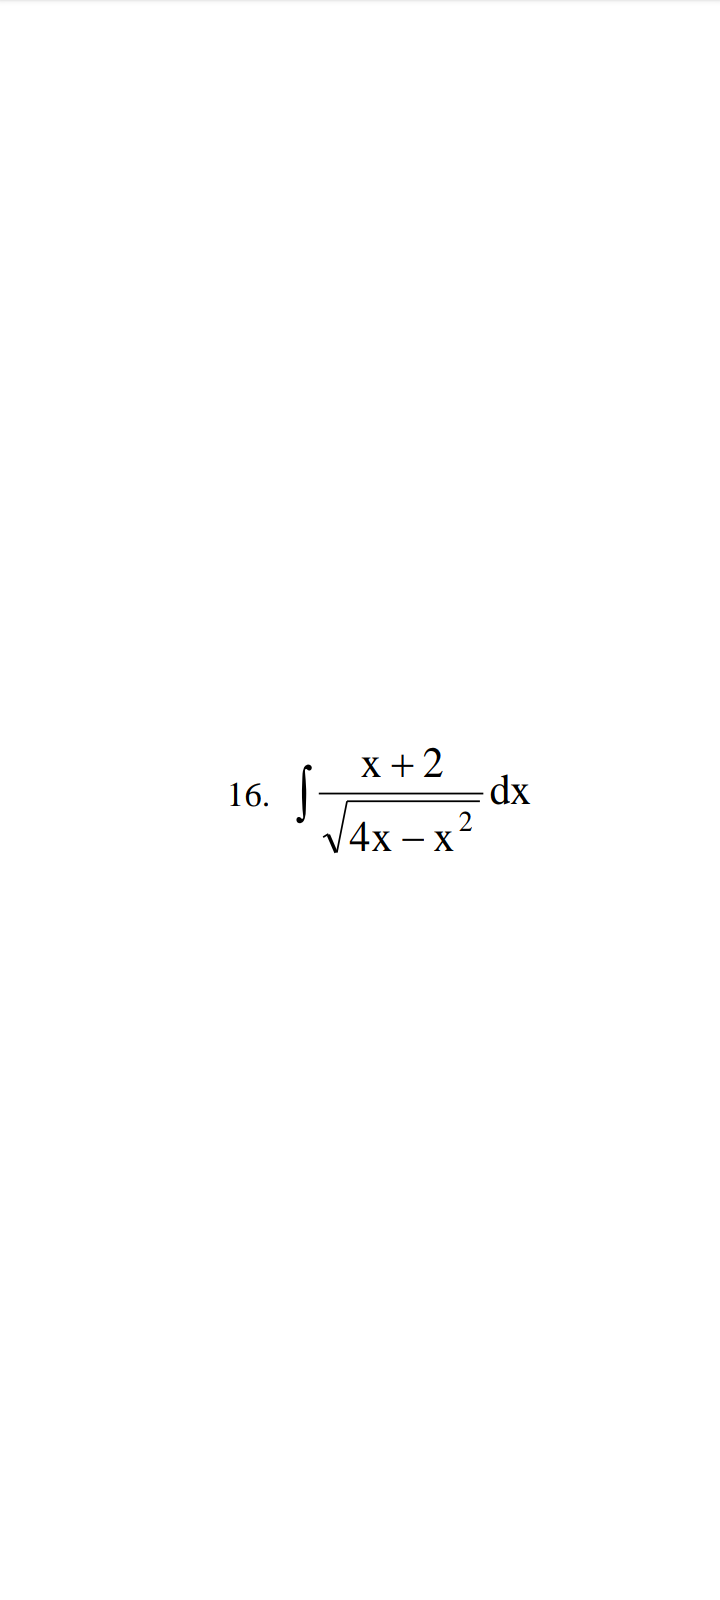 16.
X+2
S-
√4x-x²
- dx